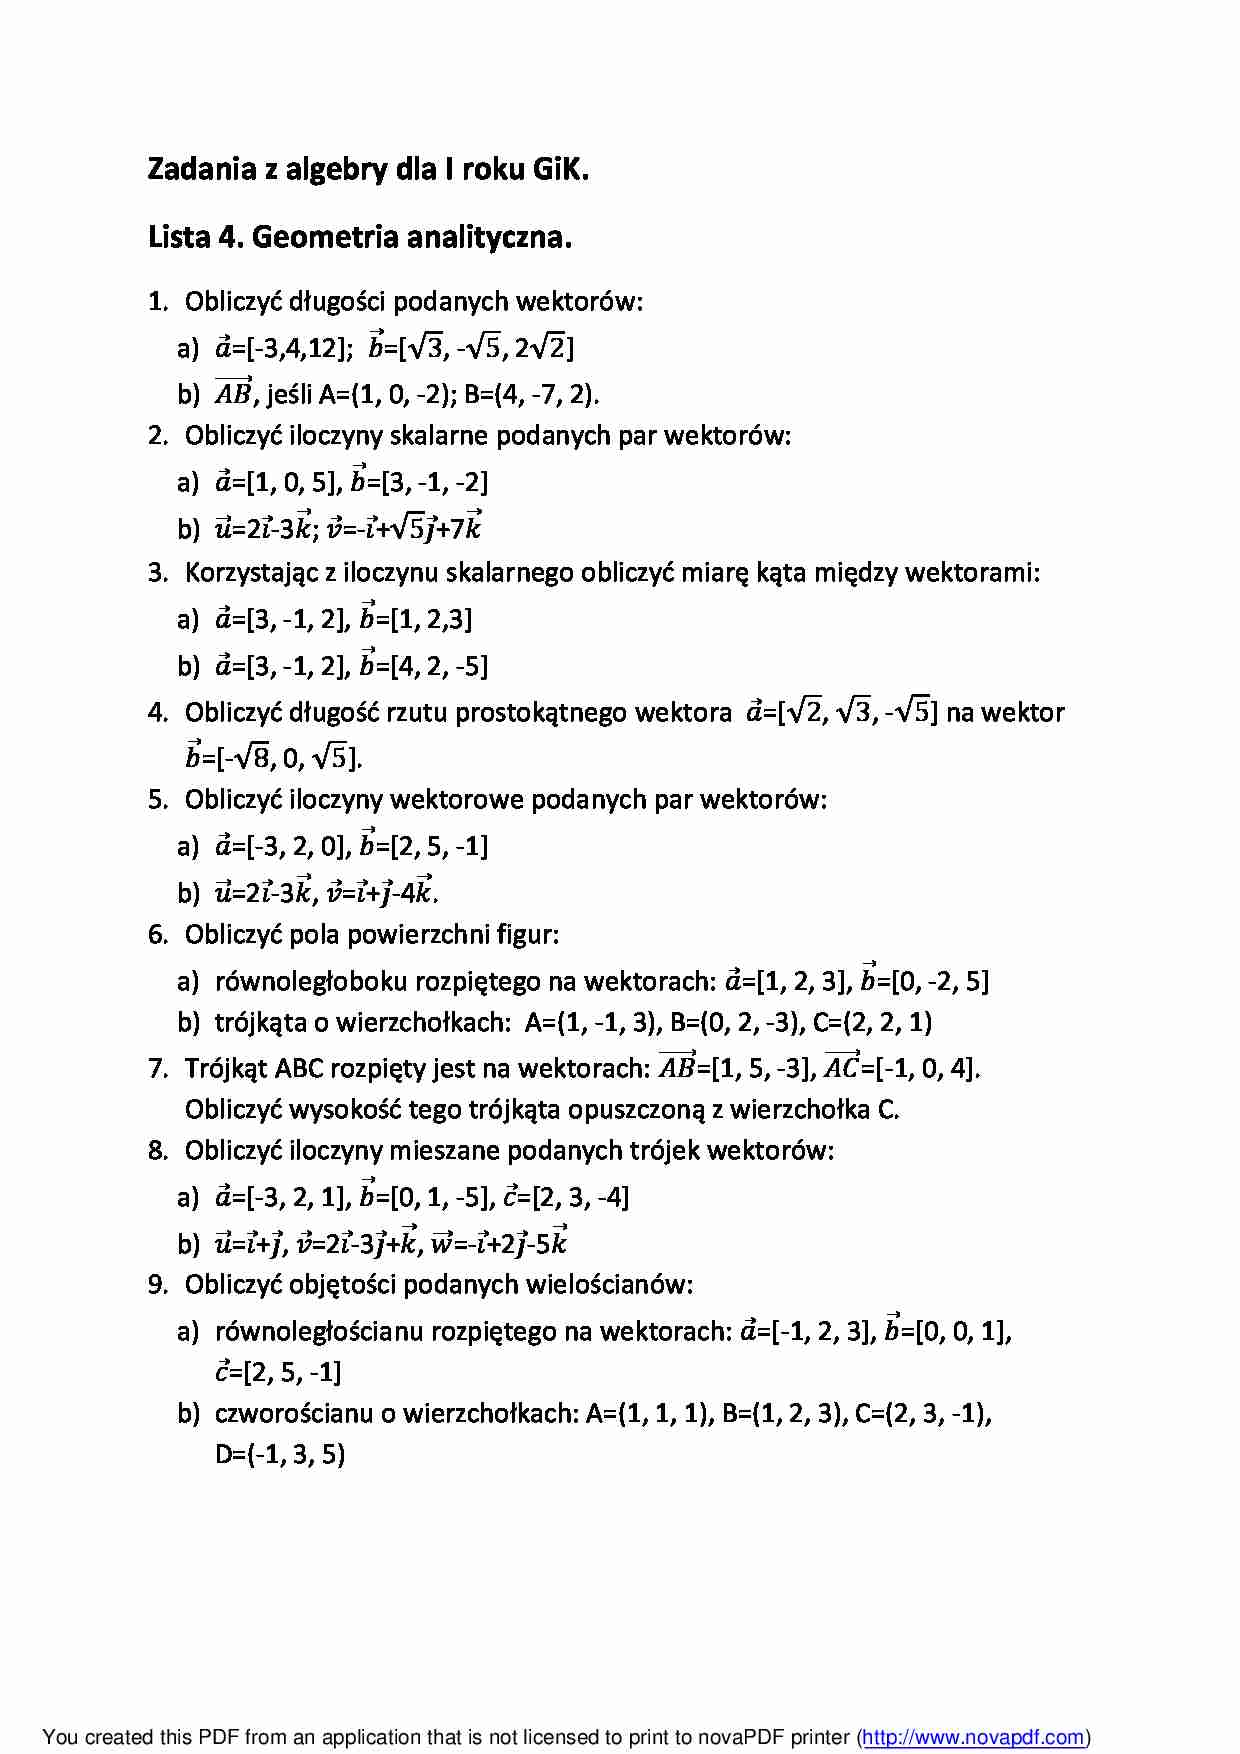 Geometria analityczna - zadania z algebry - strona 1